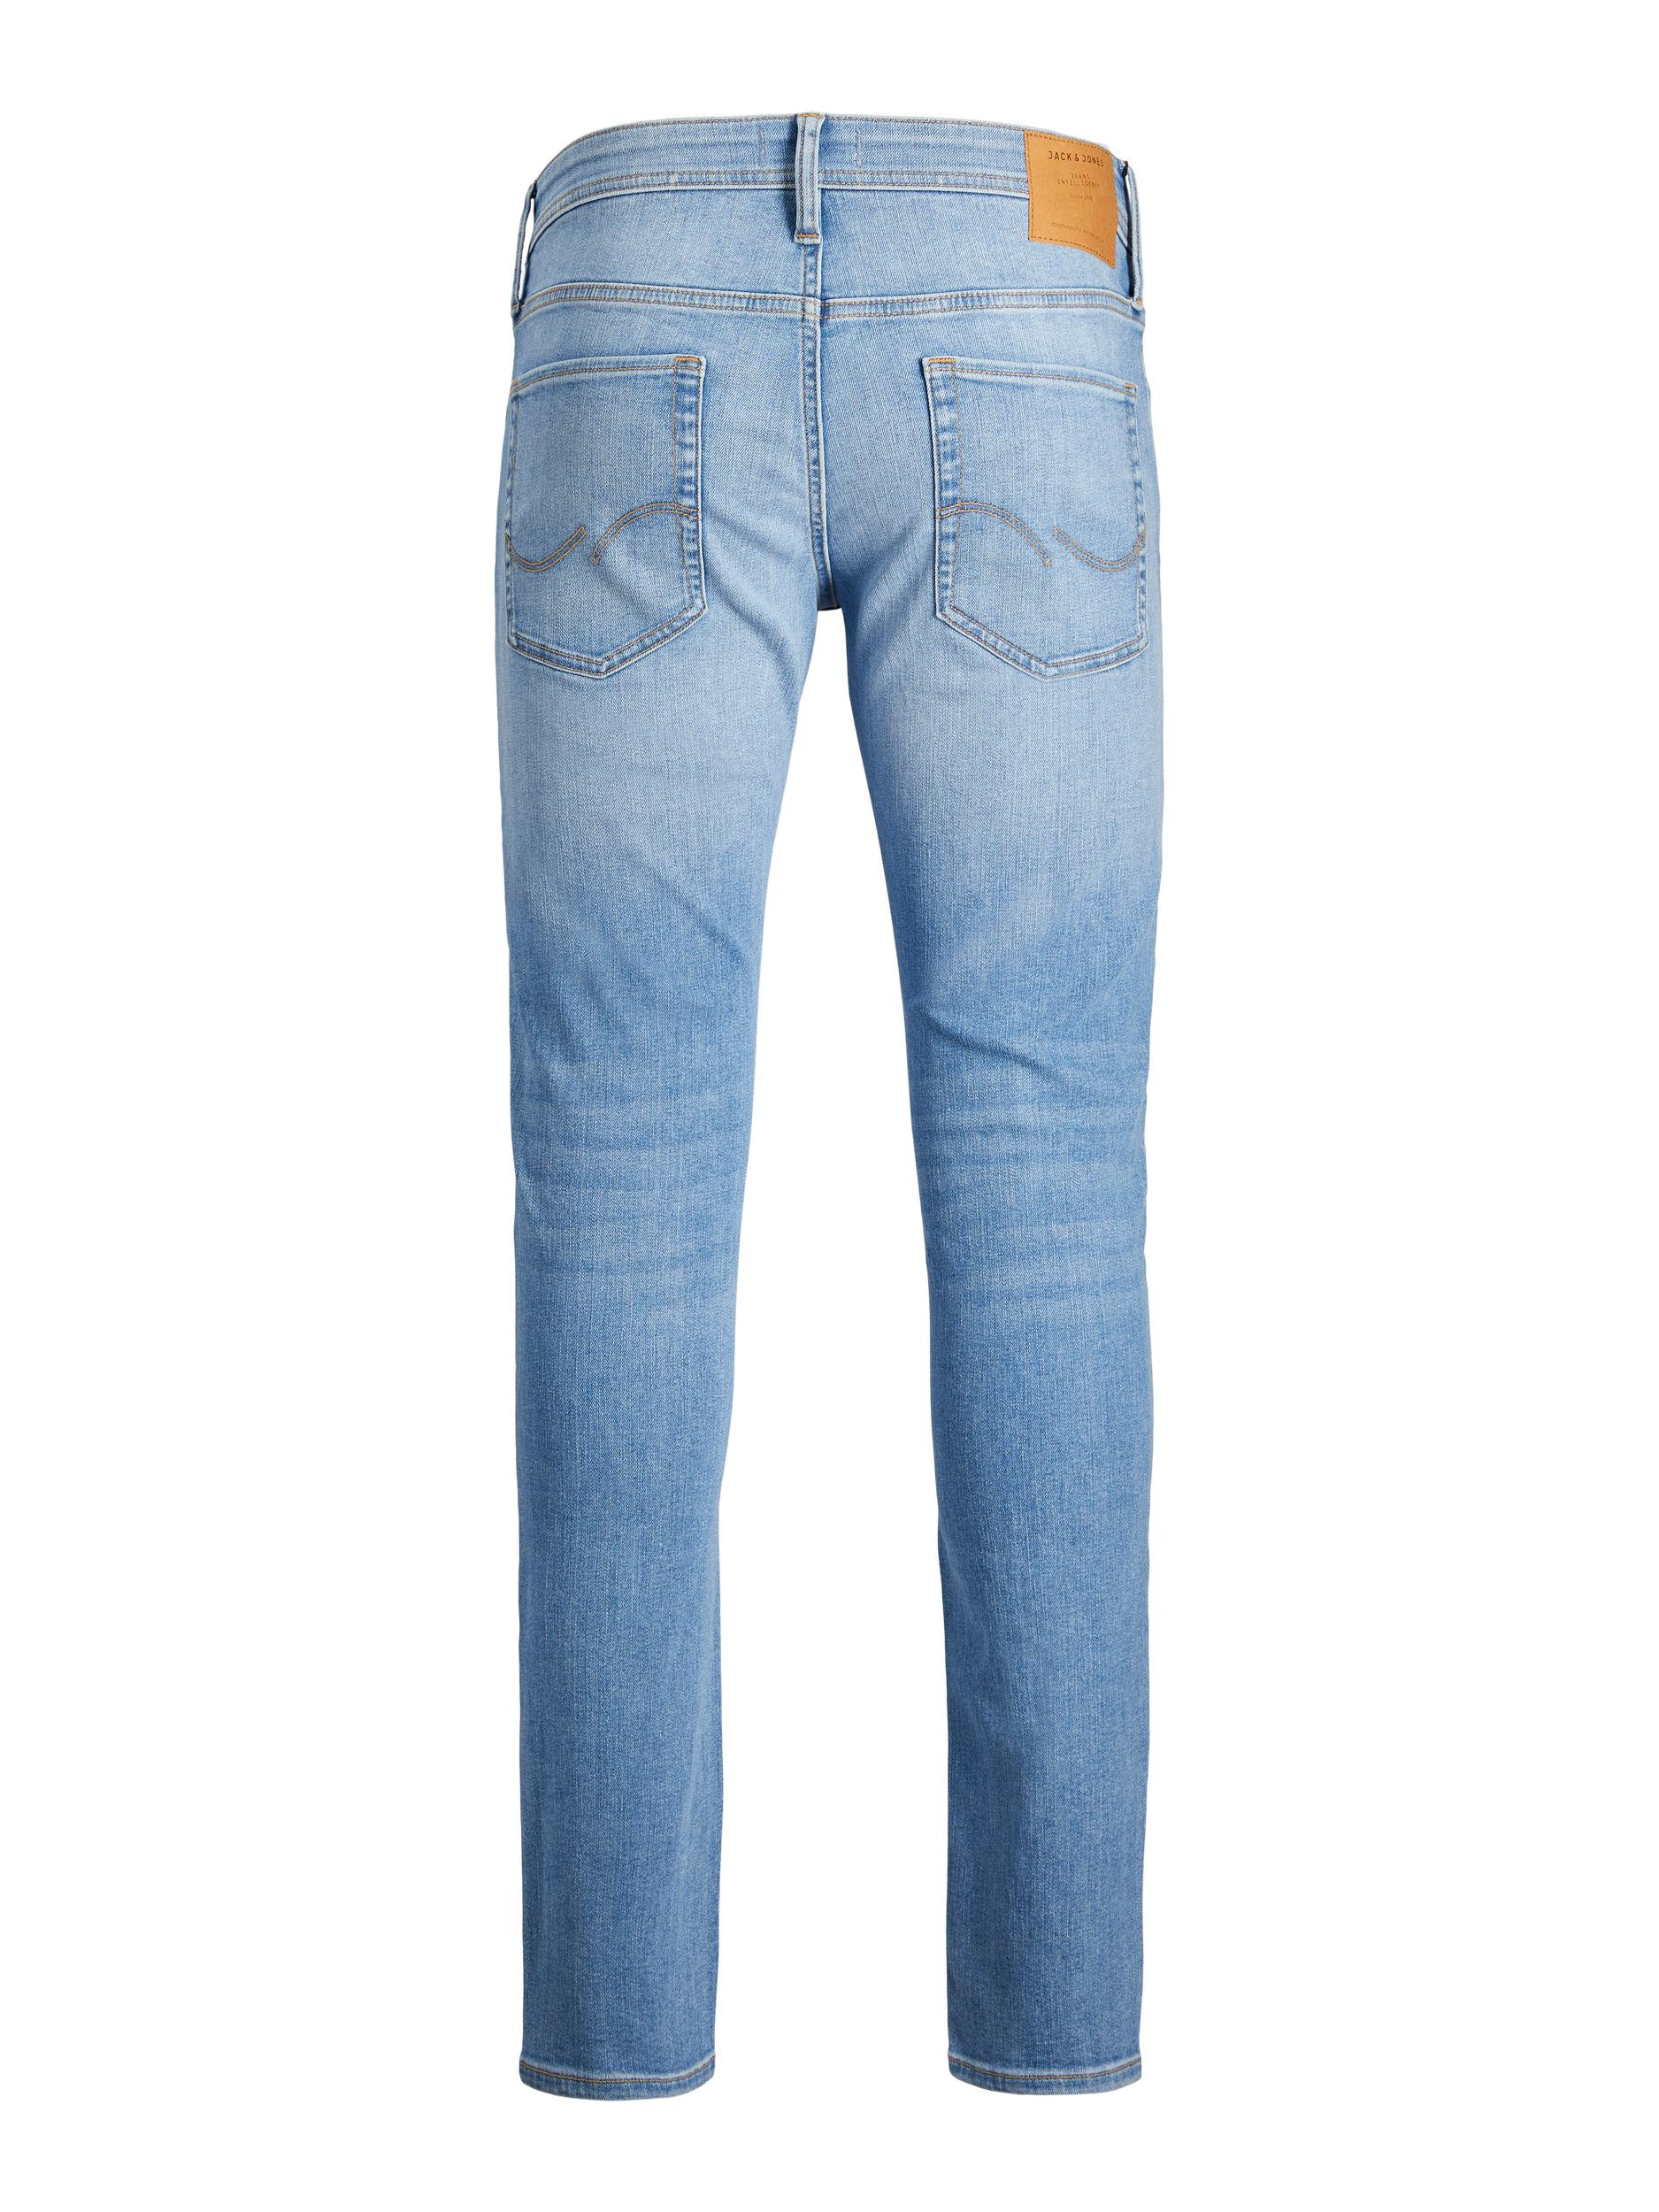 Jack & Jones - Jeans cinque tasche slim fit, Denim, large image number 1